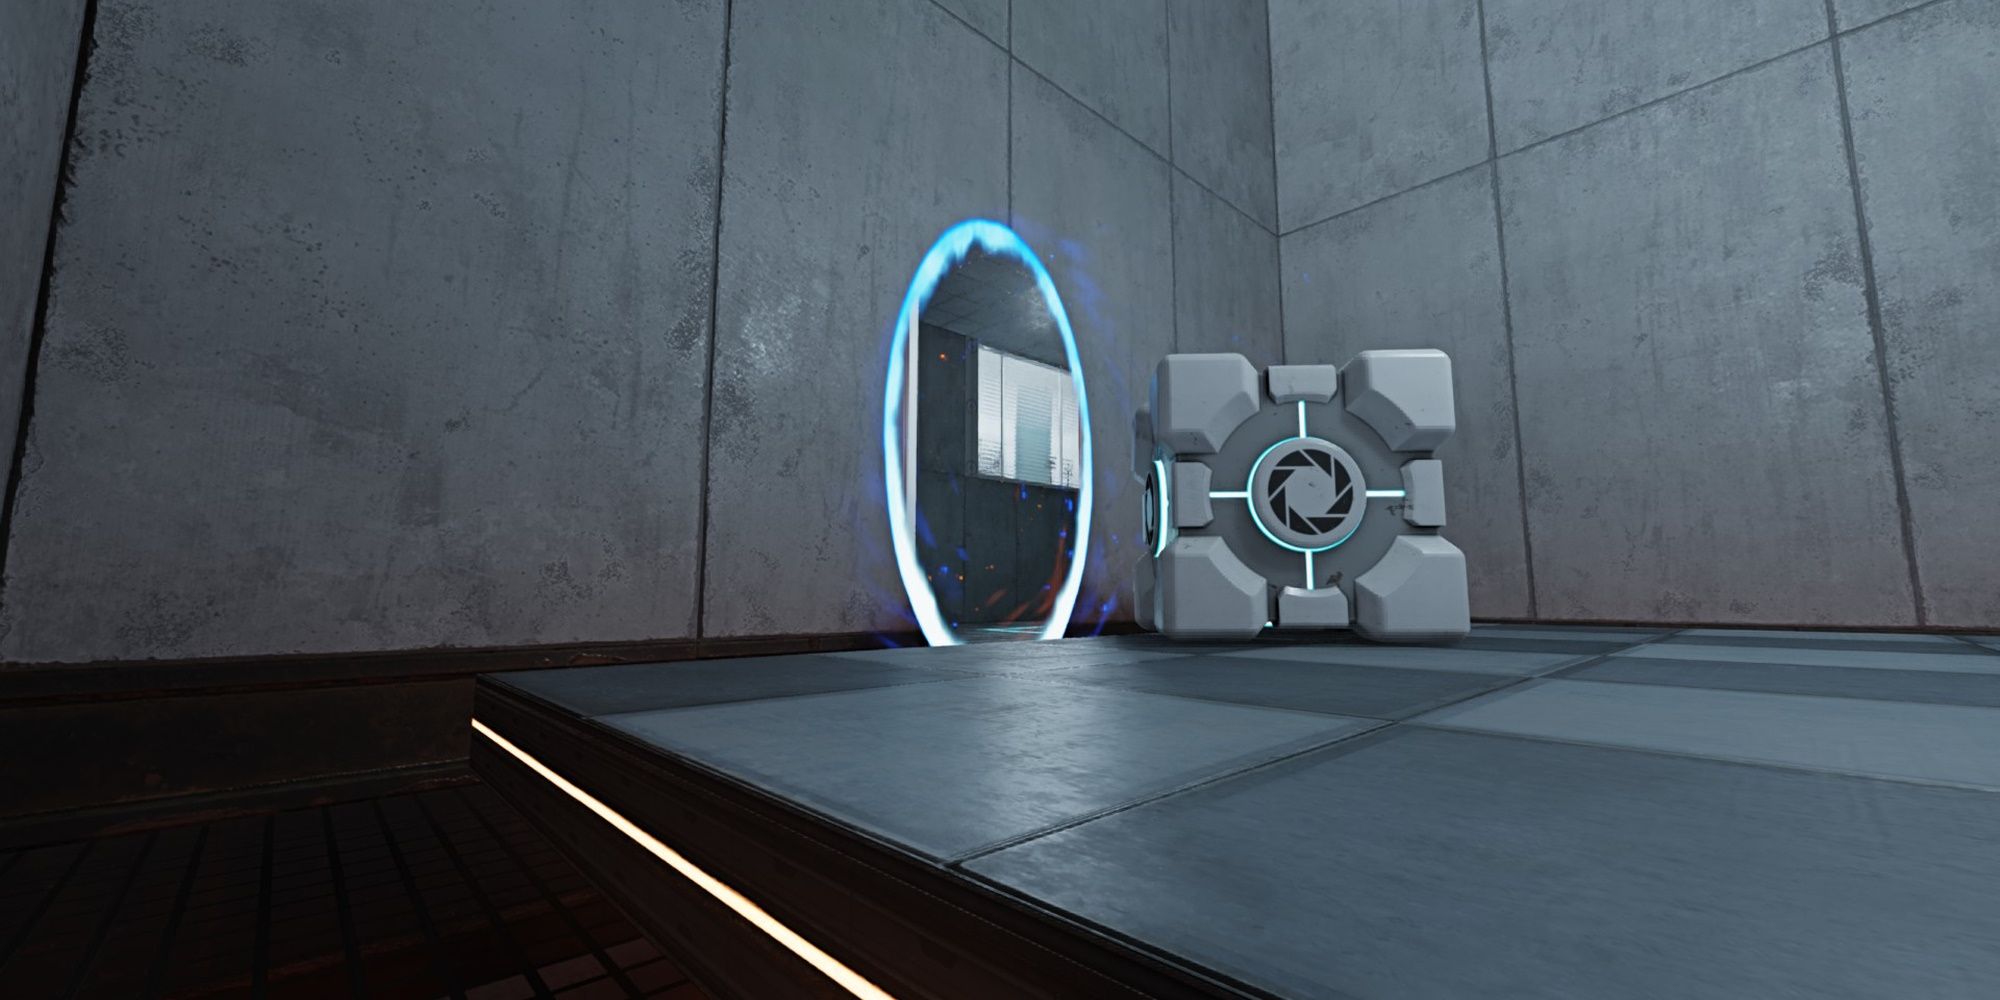 Portal with RTX de graça para quem possui Portal no PC (Steam)